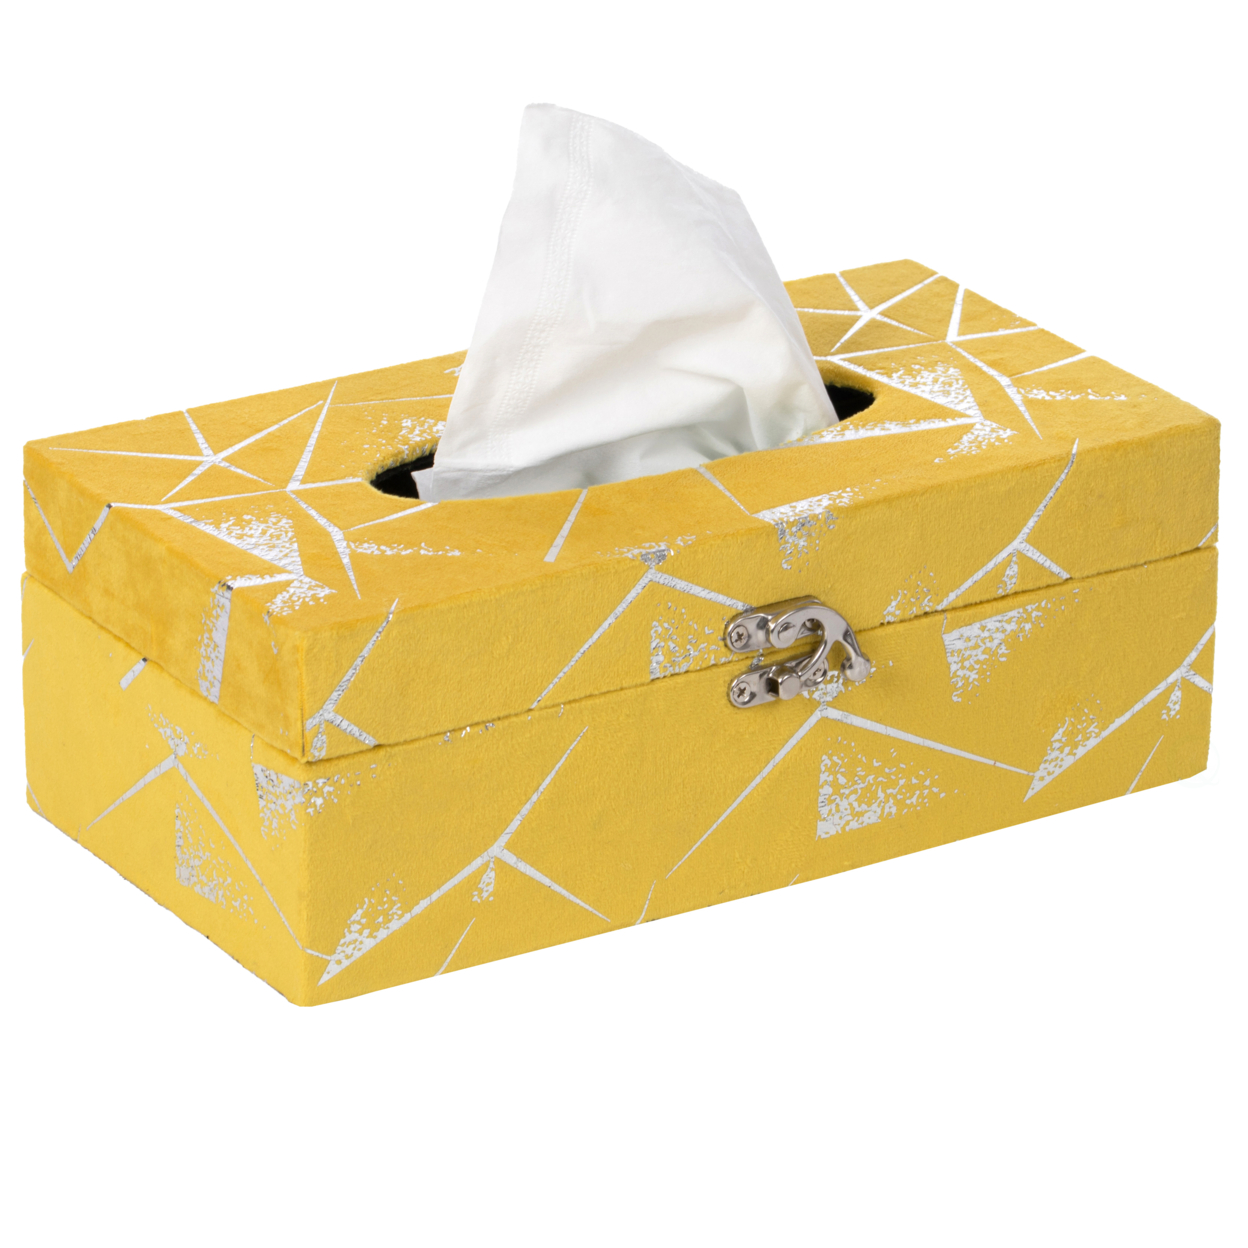 Velvet Modern Paper Facial Tissue Box Holder - White And Gold Rectangle